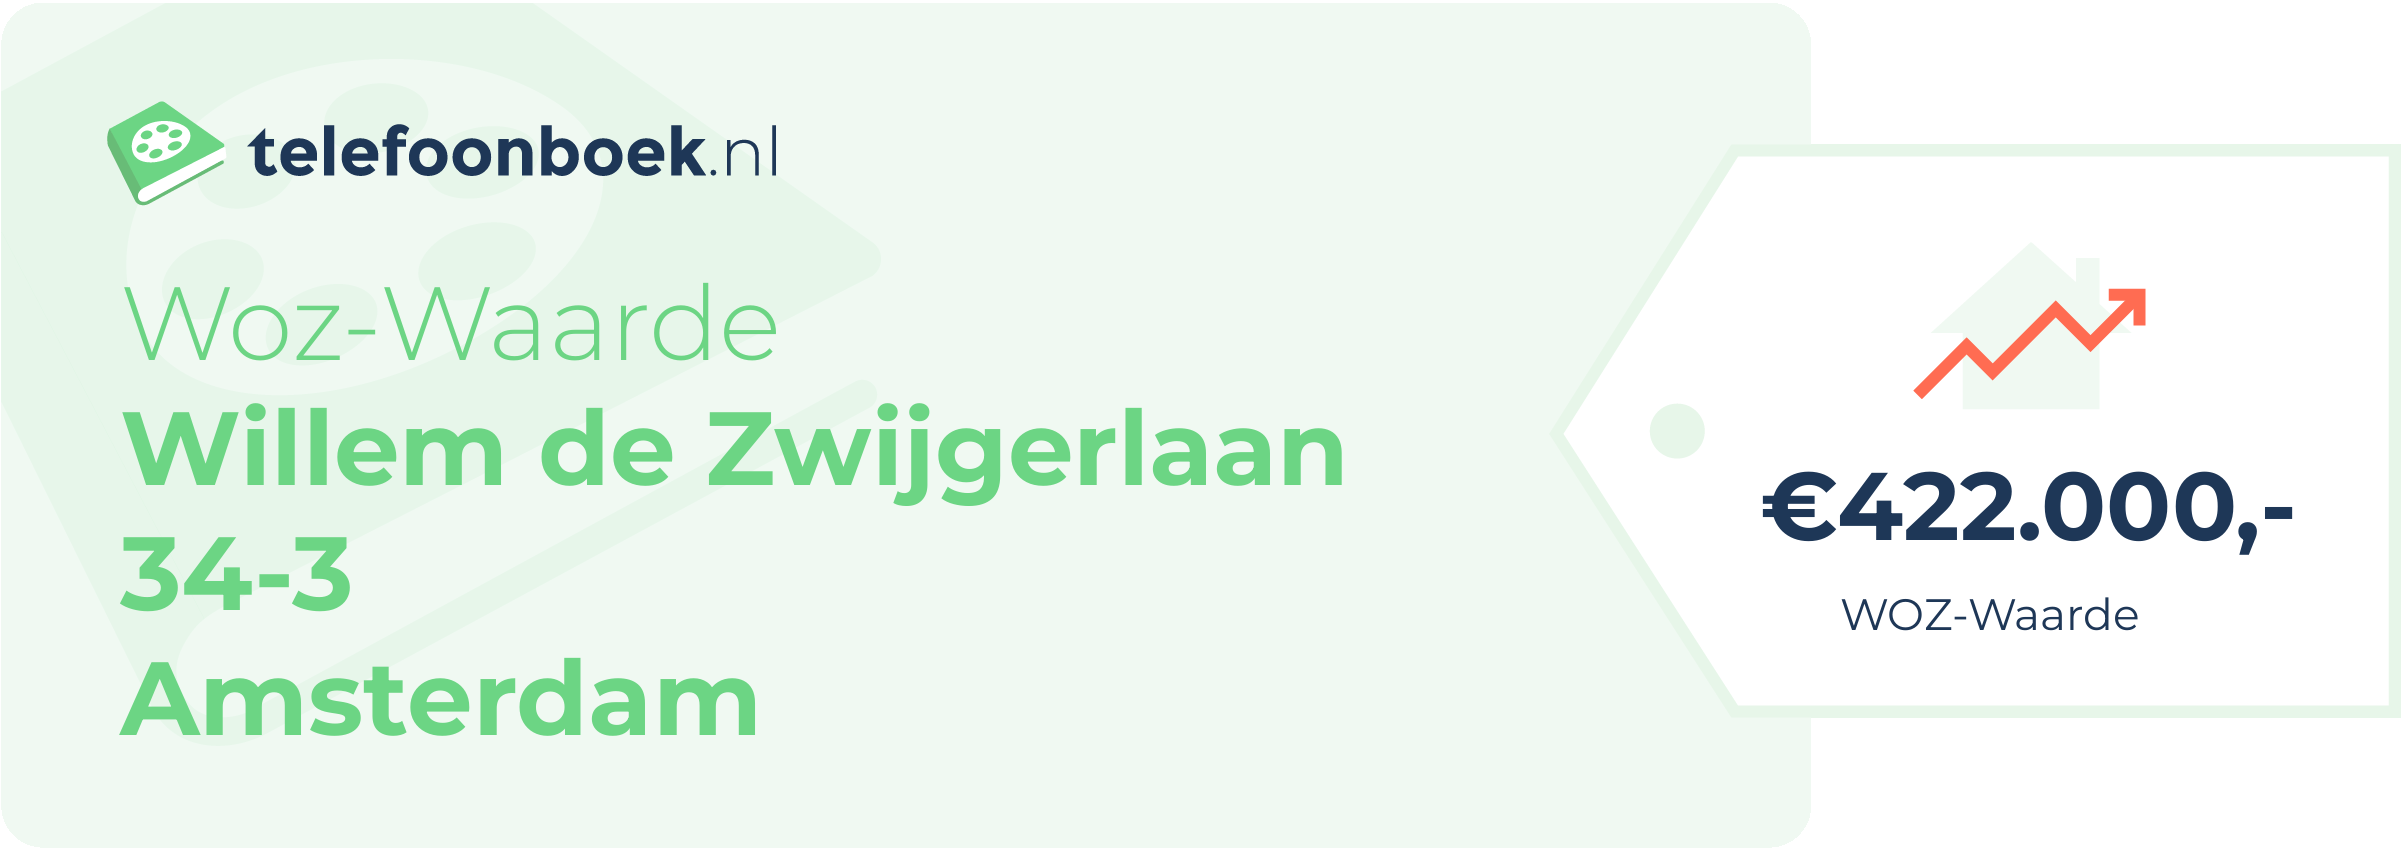 WOZ-waarde Willem De Zwijgerlaan 34-3 Amsterdam